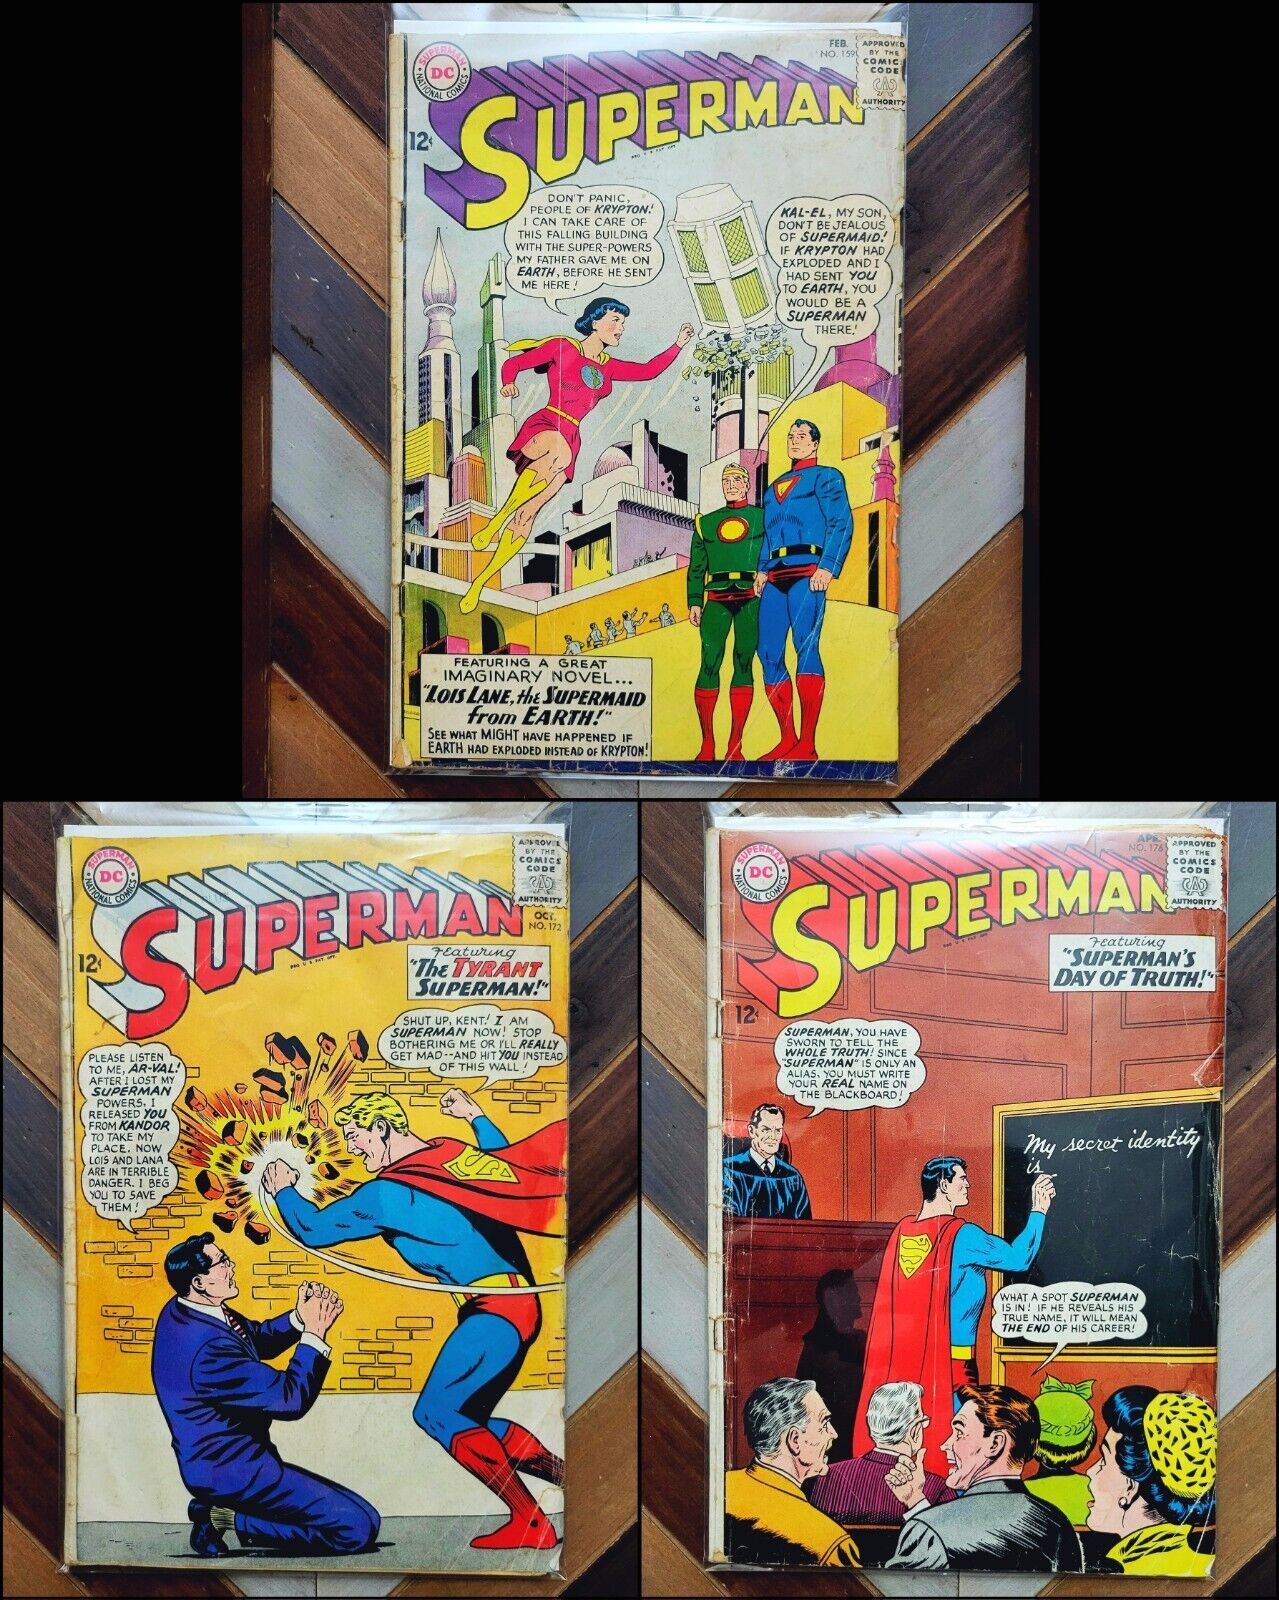 SUPERMAN #159 172 176 (DC 1963-65) Silver Age LOIS LANE/TWO SUPERMEN/SUPER PETS